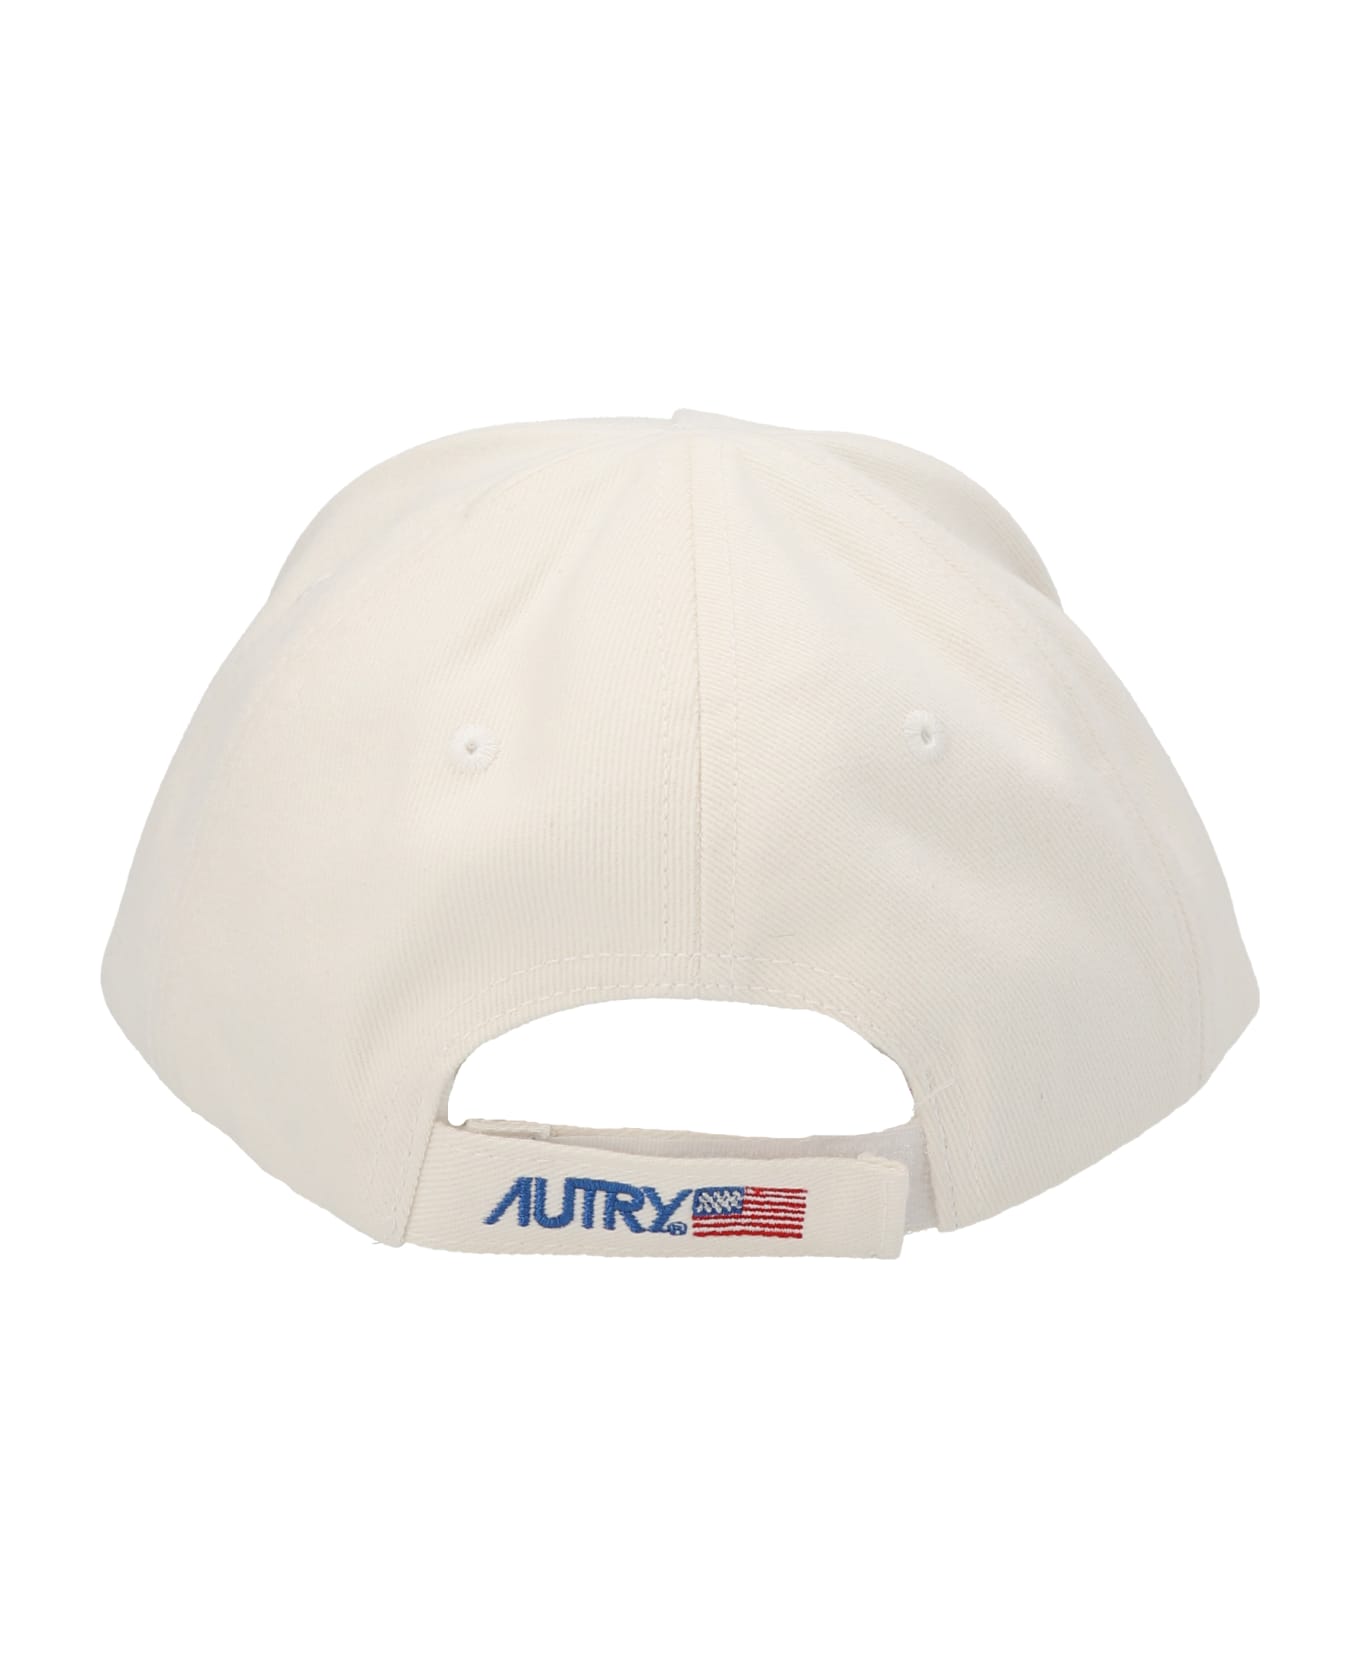 Autry White Cotton Cap - White